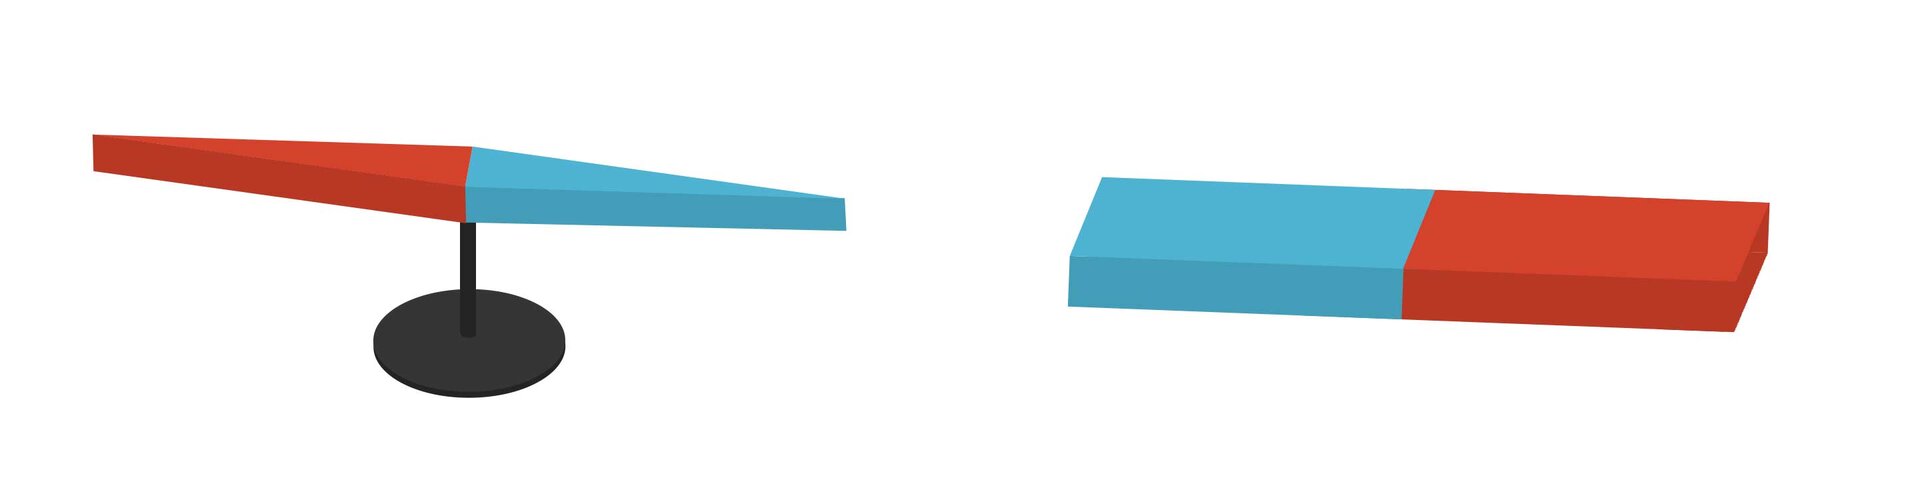 Zdjęcie z lewej strony przedstawia igłę magnetyczną. Ma ona kształt dwóch połączonych ze sobą trójkątów, jednego czerwonego i jednego niebieskiego, a z prawej strony magnes sztabkowy, który z kolei ma kształt dwóch połączonych ze sobą prostokątów, jednego niebieskiego i jednego czerwonego.